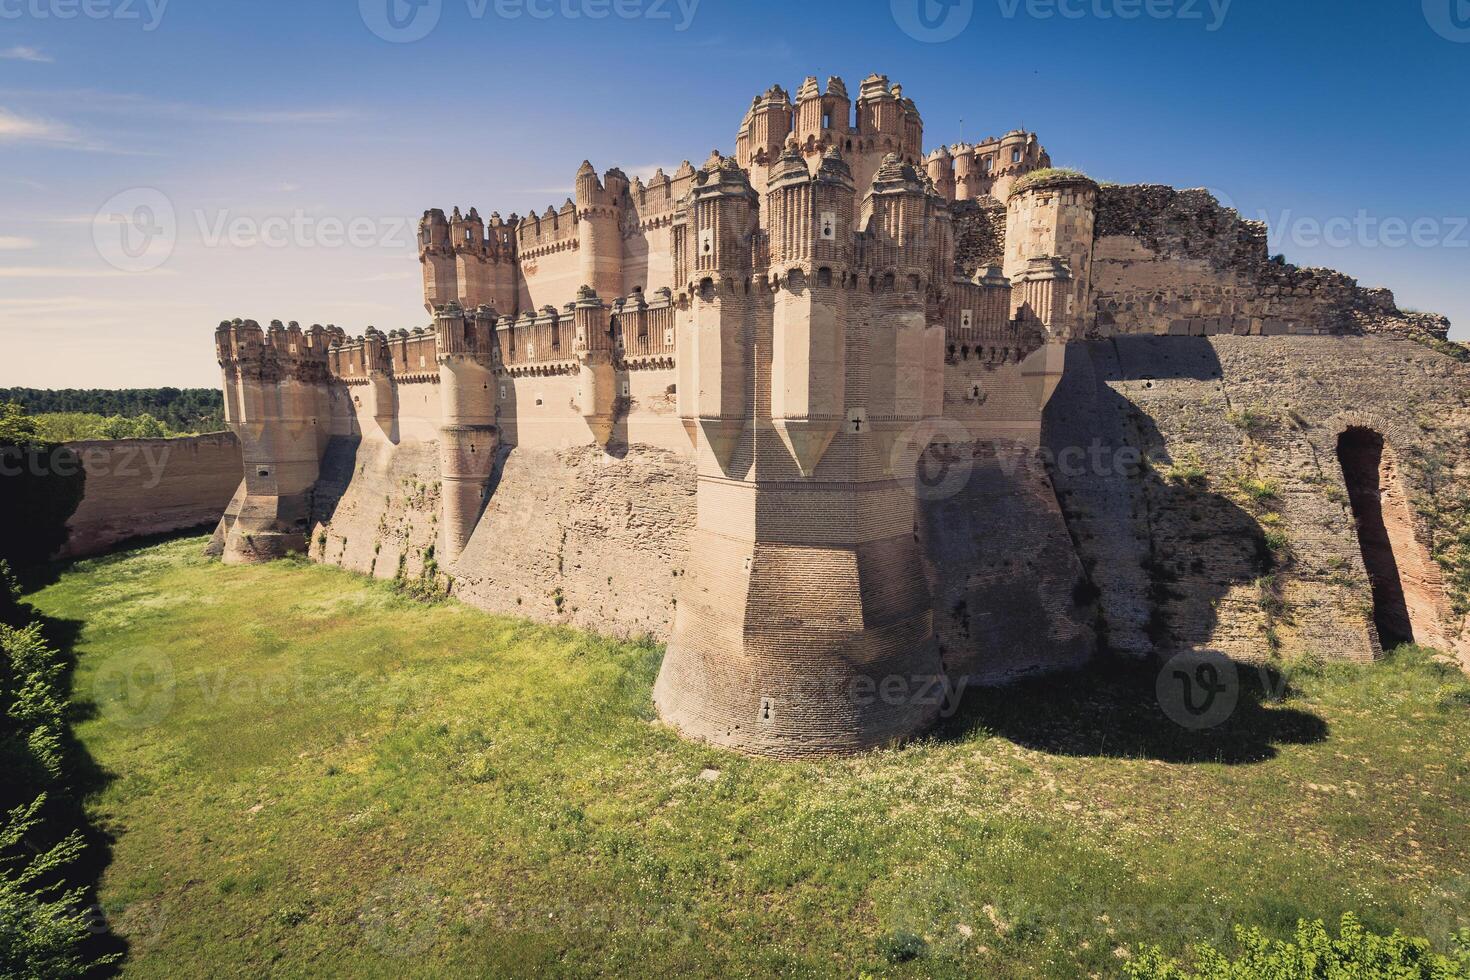 coca kasteel, Segovia Castilla y leon, Spanje. foto